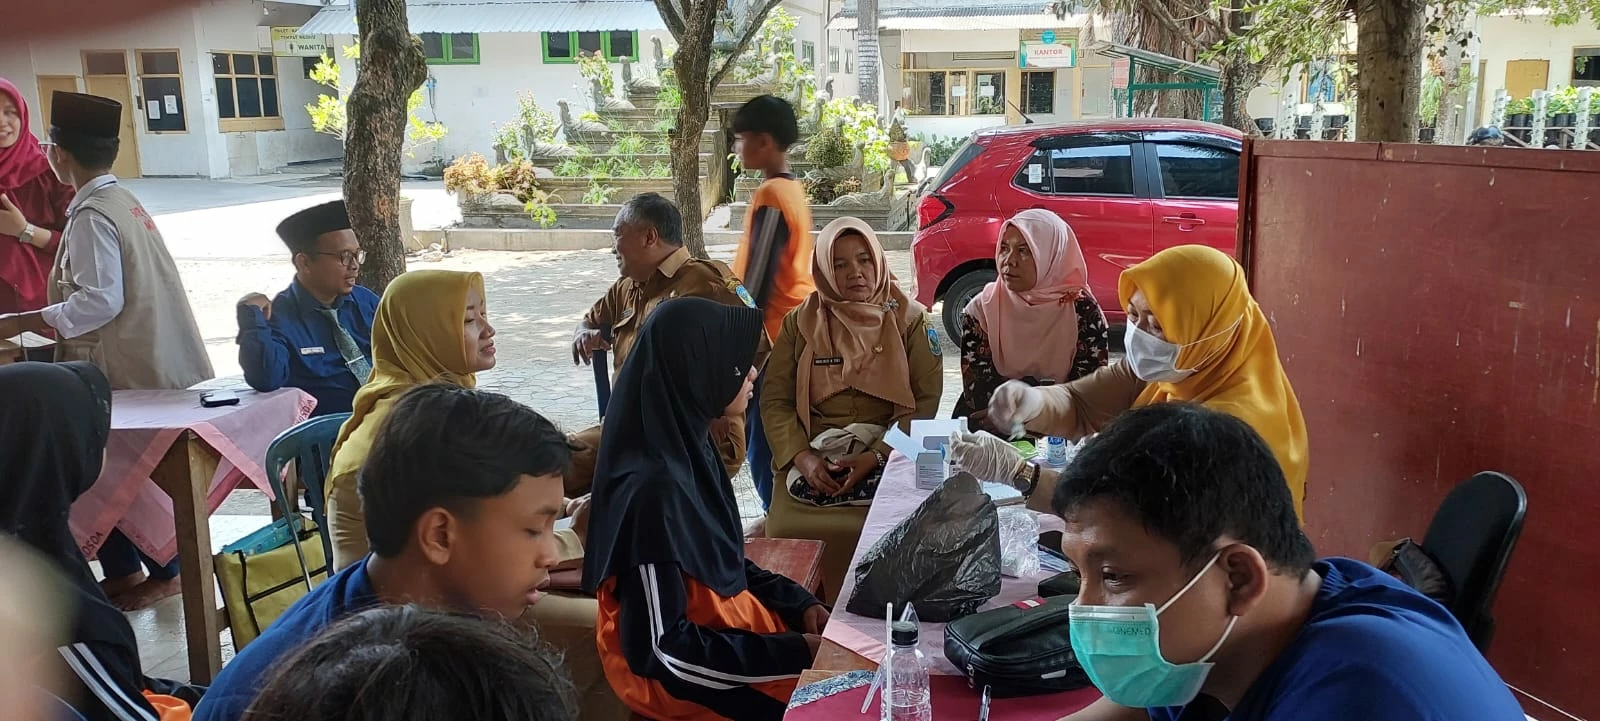 Penjaringan Kesehatan Santri SMP Pomosda Tanjunganom Sukses Digelar, Santri Antusias dan Wawasannya Bertambah